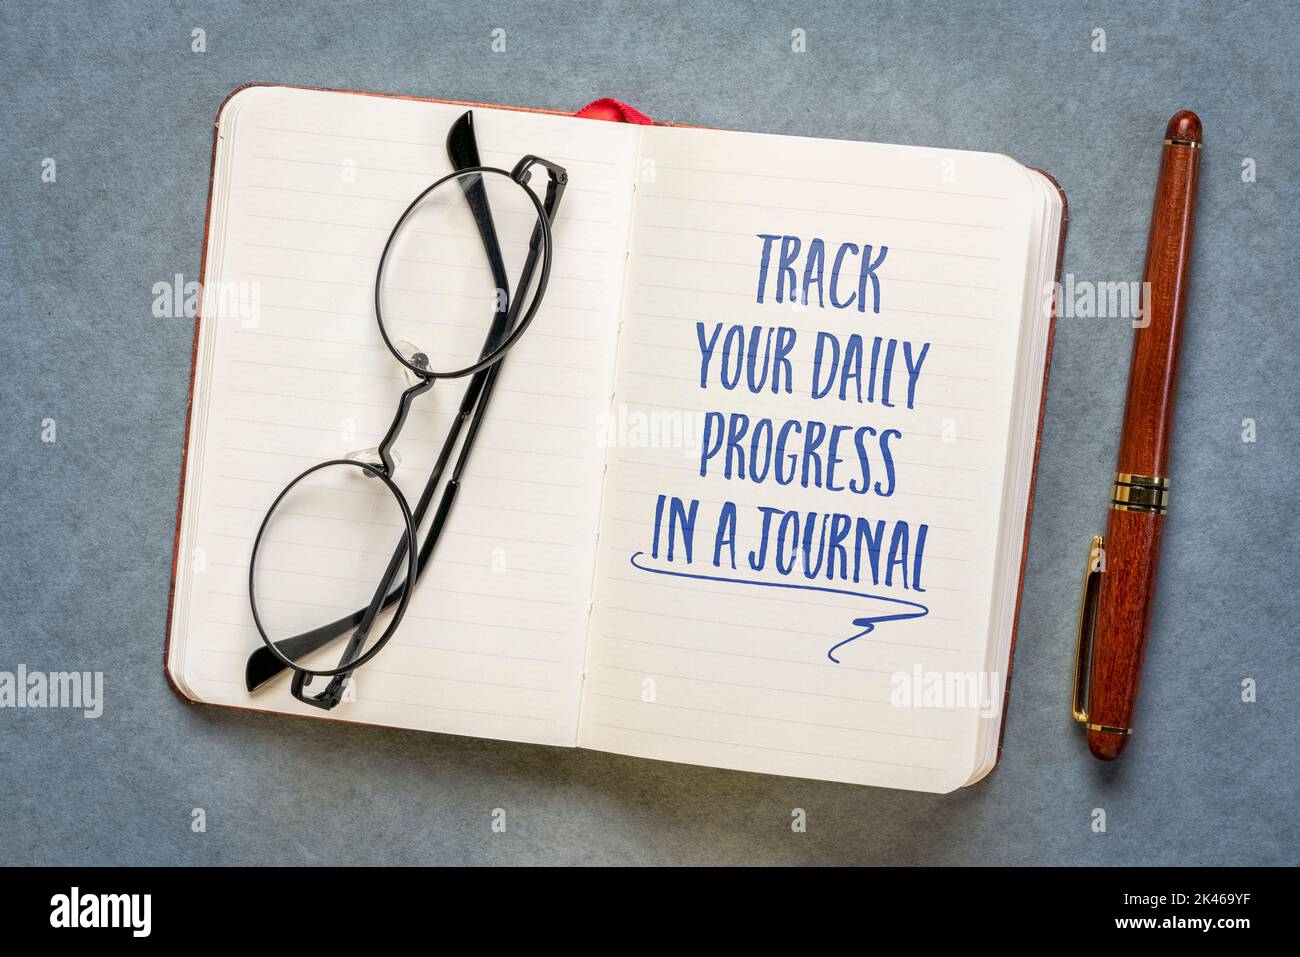 suivez vos progrès quotidiens dans un journal - conseils d'inspiration dans un carnet, la journalisation et l'avancement du développement personnel Banque D'Images